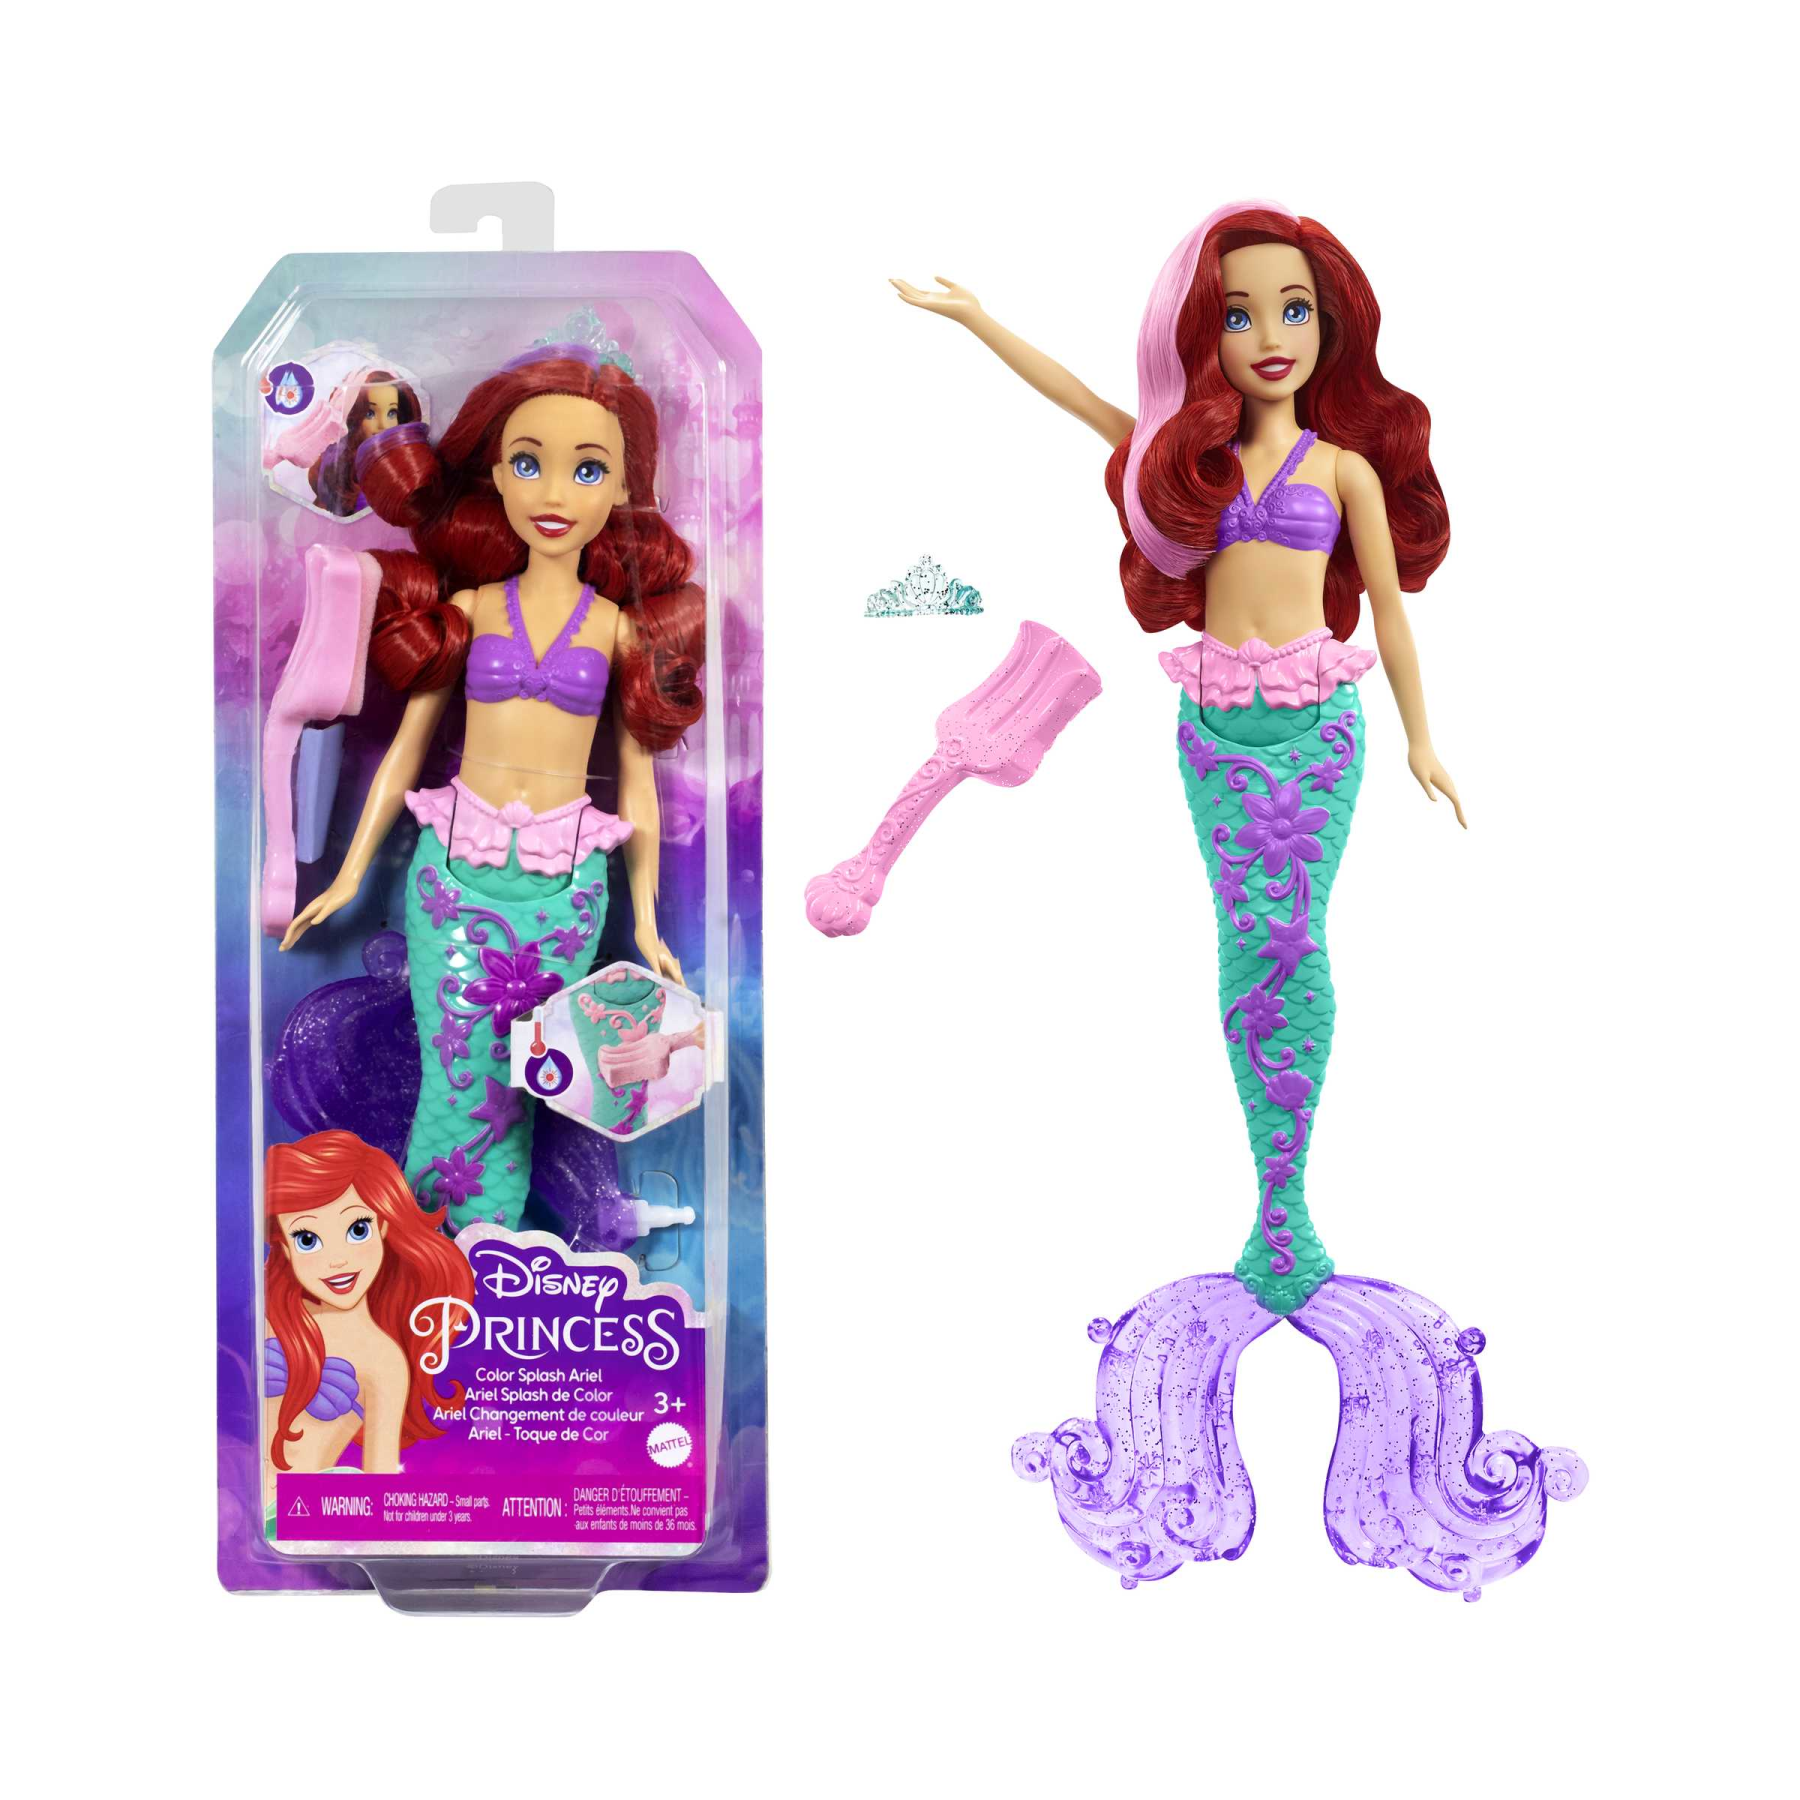 Disney princess - ariel cambia colore, bambola sirenetta con capelli e coda cambia colore, giocattolo acquatico ispirato al film disney, giocattolo per bambini, 3+ anni, hlw00 - DISNEY PRINCESS